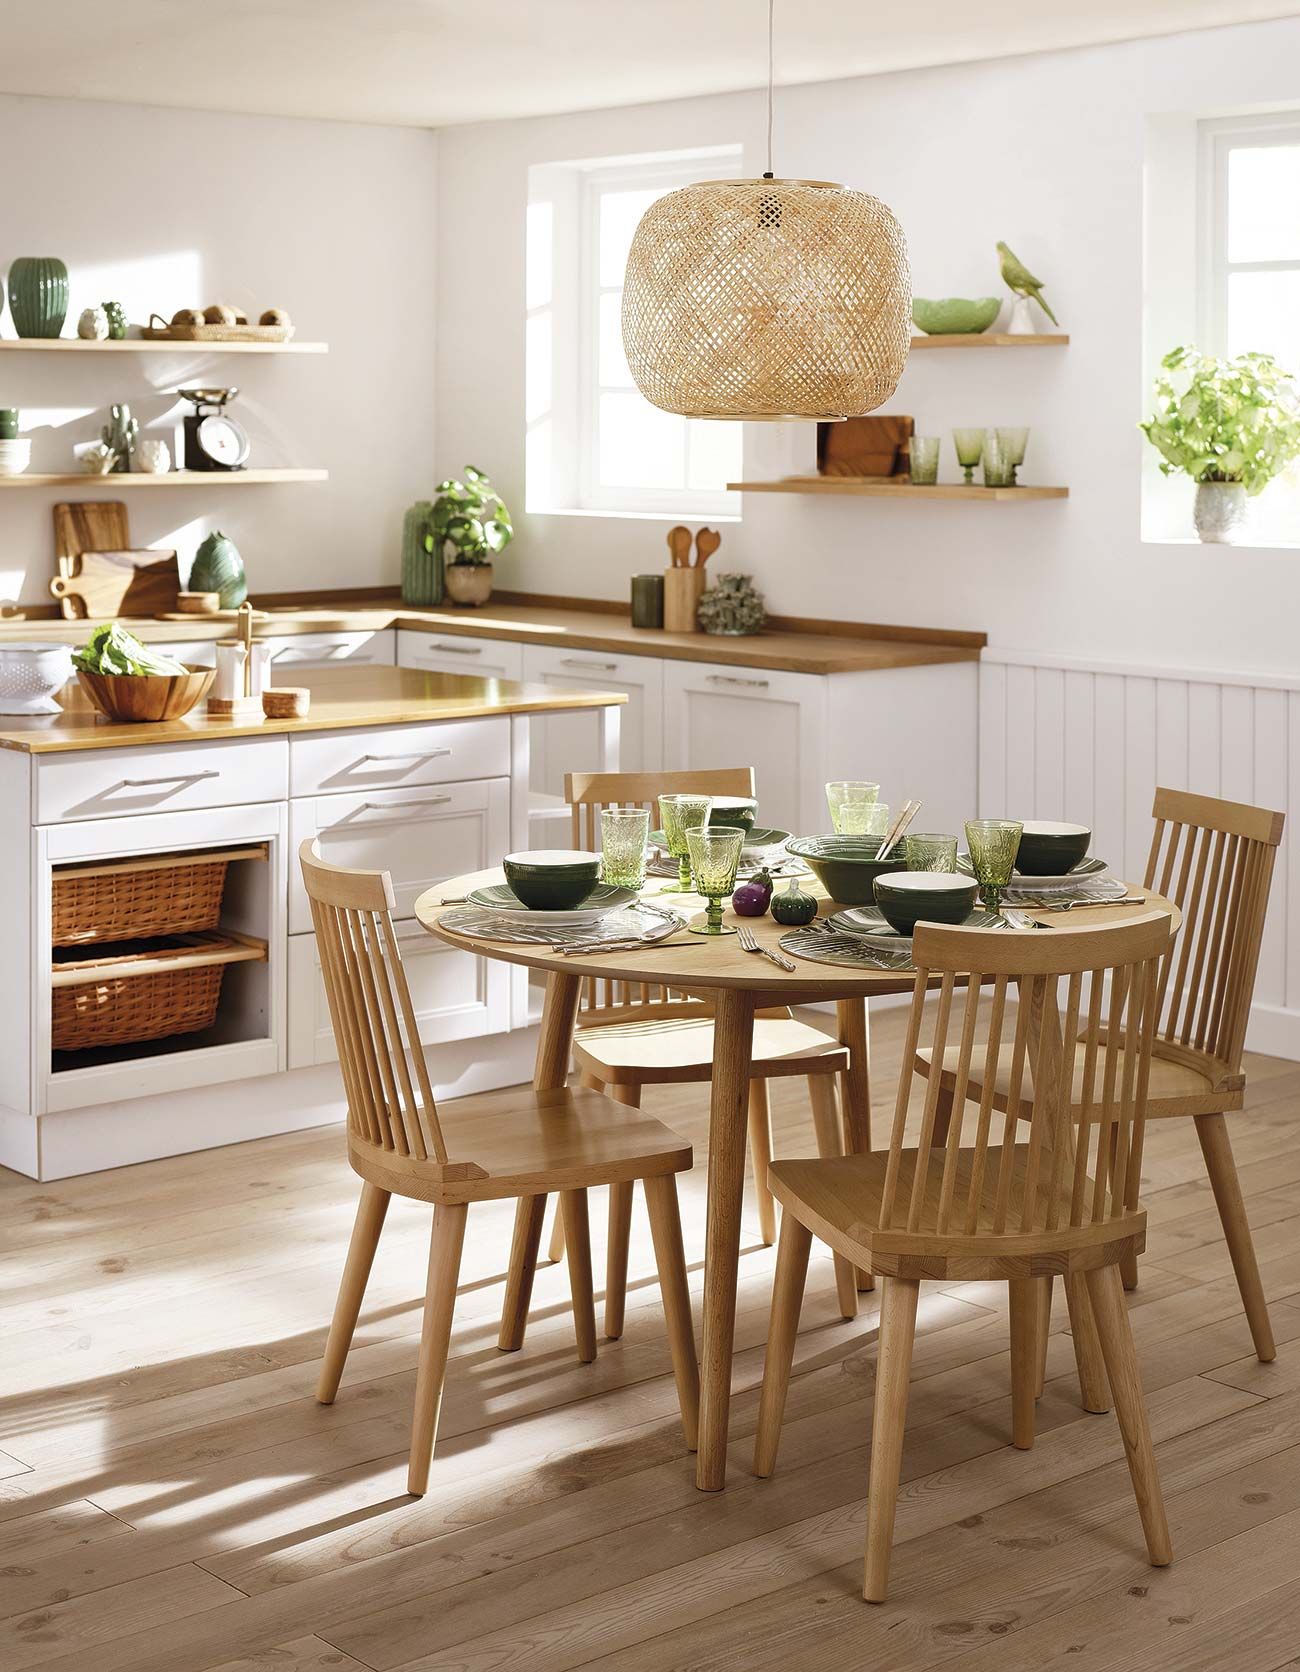 Estas ideas de decoración dan encanto y vida a tu cocina - Foto 1